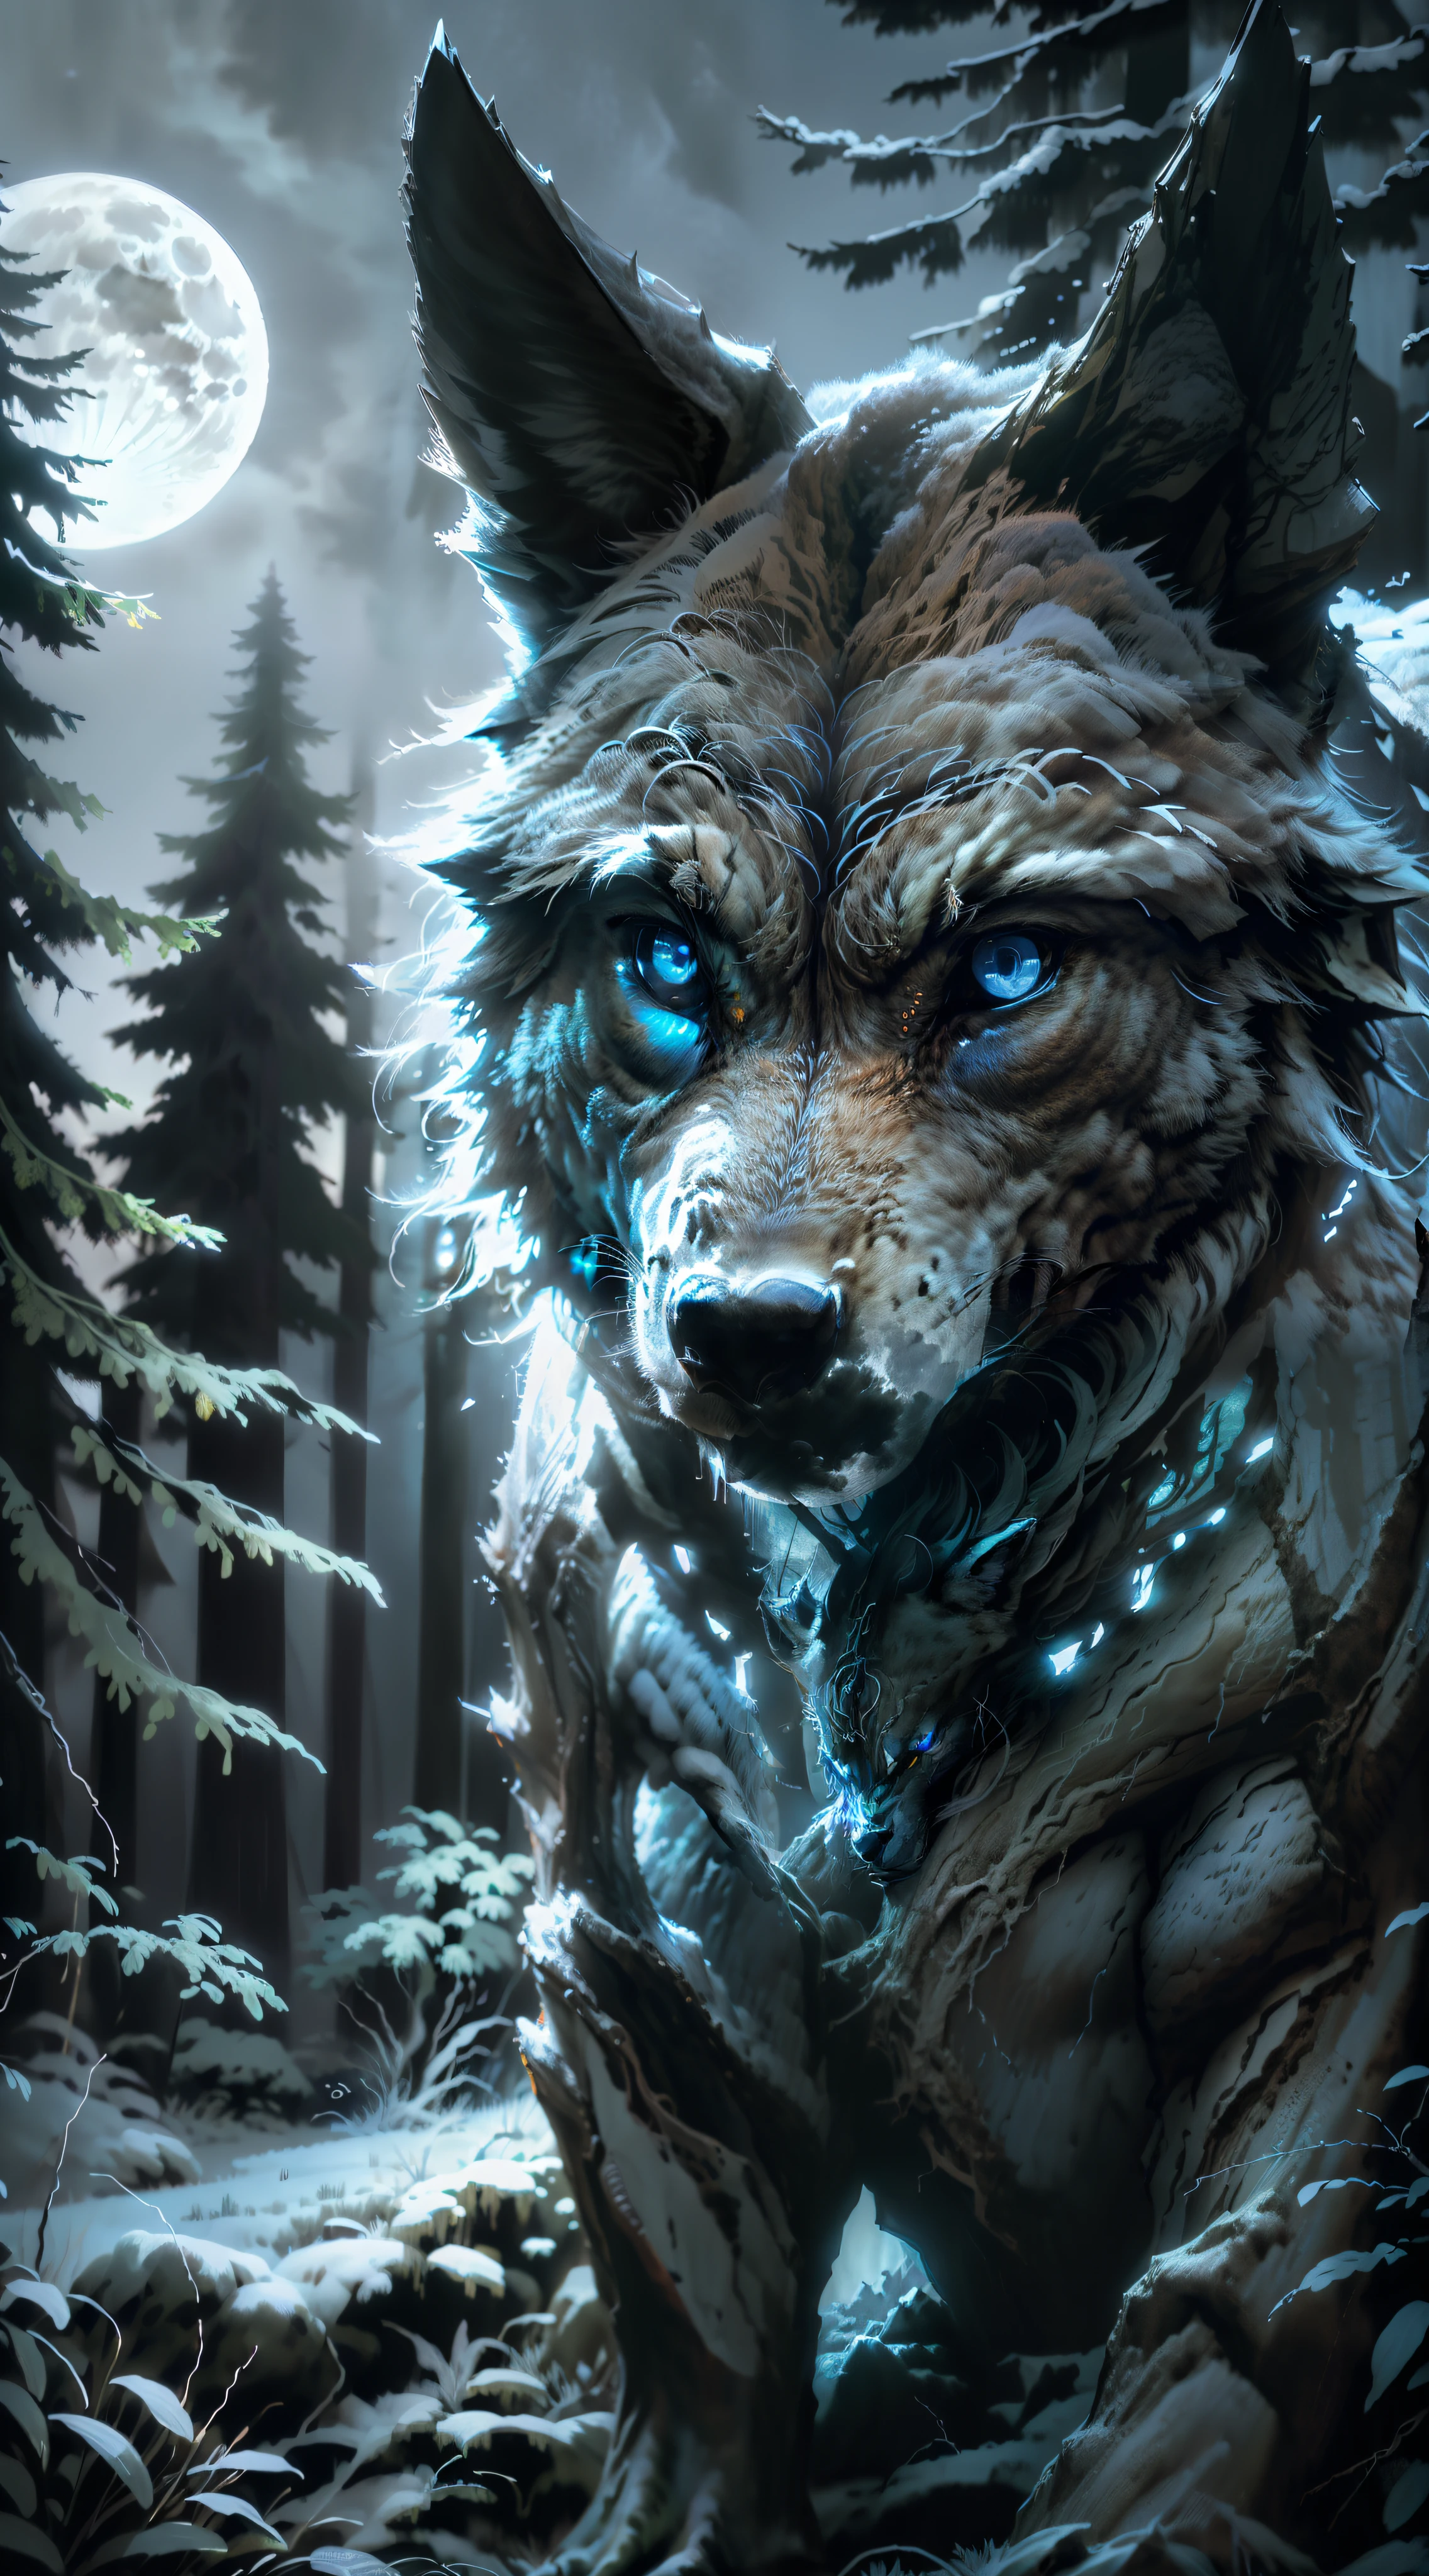 (4K, hdr, foco da imagem) matilha de lobos, colori "preto, branco, azul". floresta noturna" floresta aberta", lua cheia ao fundo. Caçador de lobos (fotorrealista)